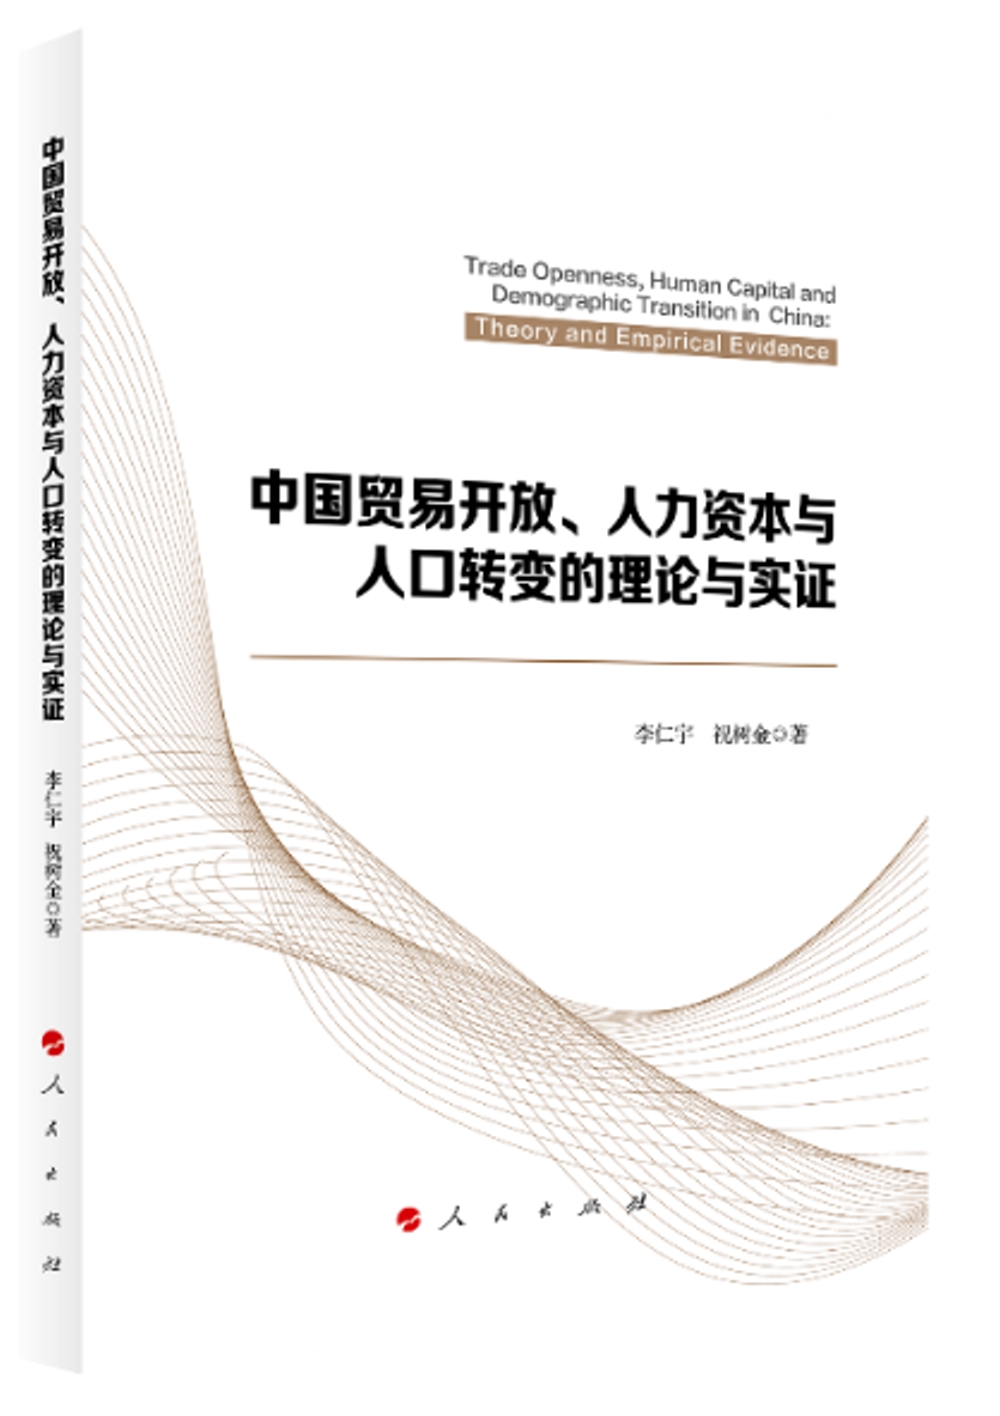 中國貿易開放、人力資本與人口轉變的理論與實證